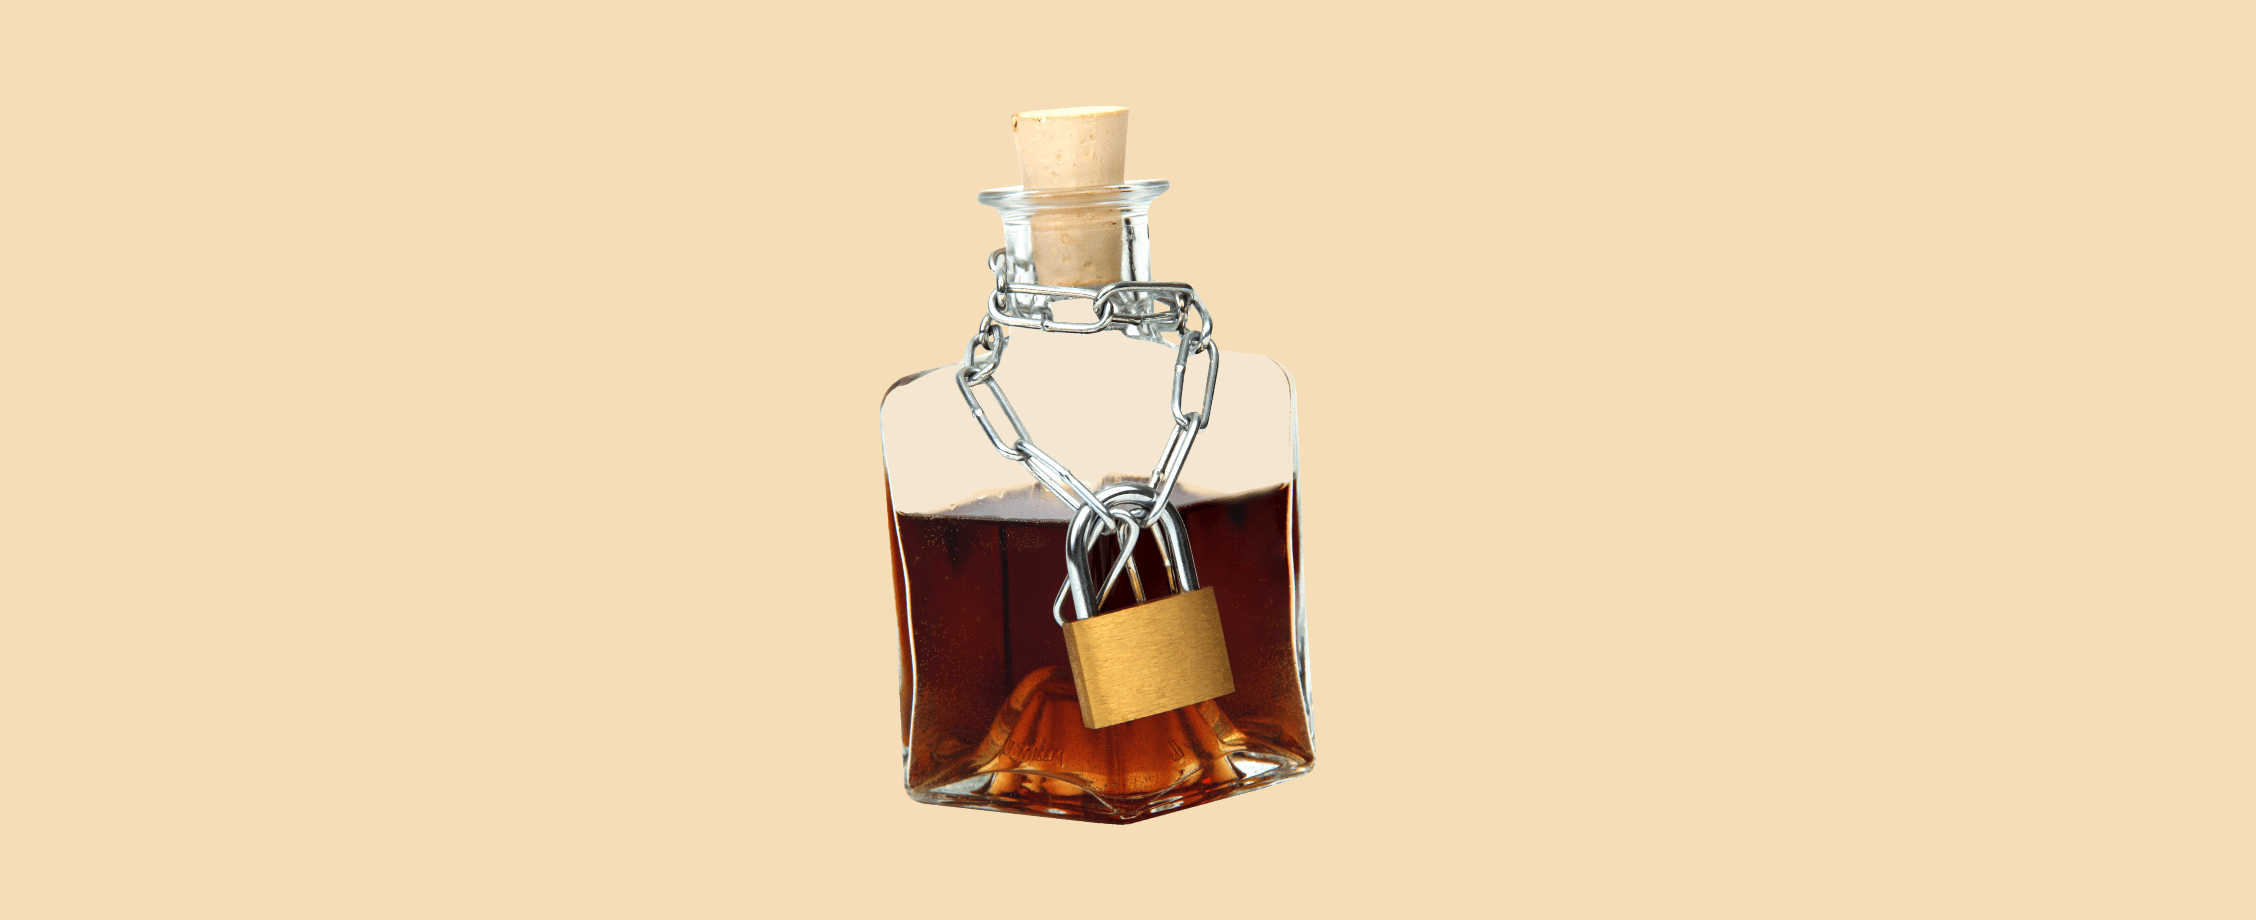 Стало известно, когда виски Jack Daniel’s и водка Finlandia исчезнут из российских магазинов